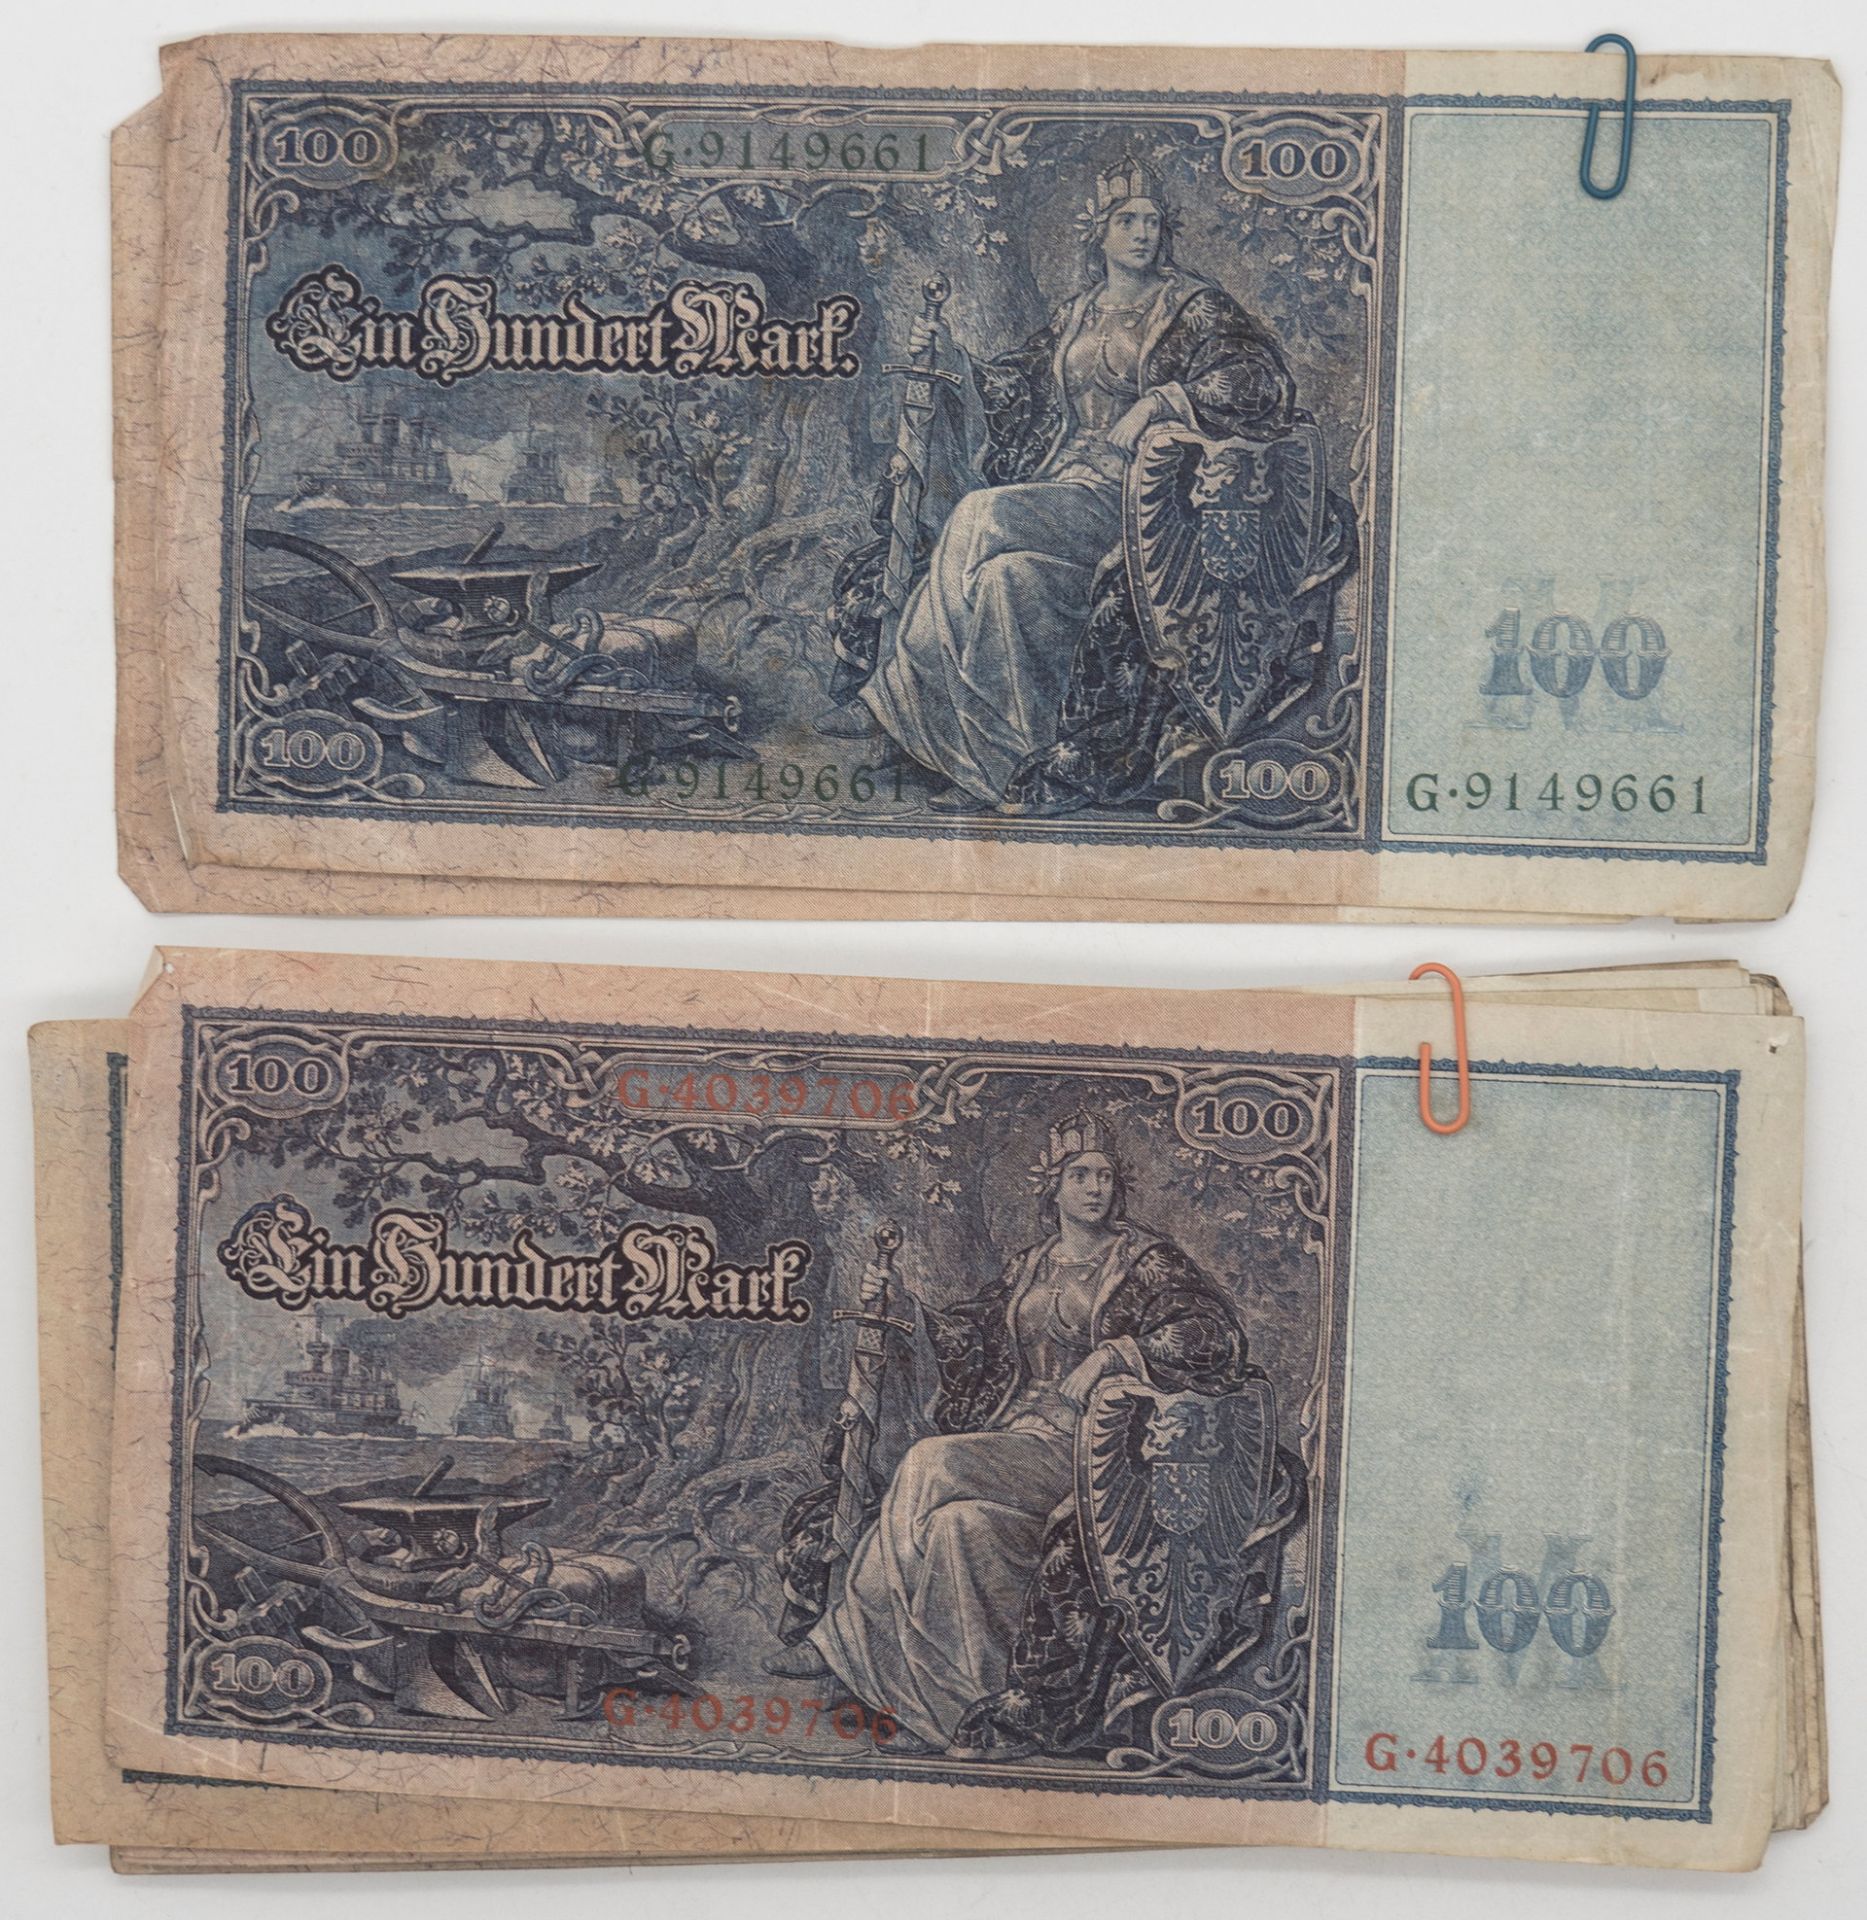 Deutsches Reich 1910, Lot 100.- Mark - Banknoten, rot. Rosenberg Nr. 43. Insgesamt 25 Stück. - Image 2 of 2